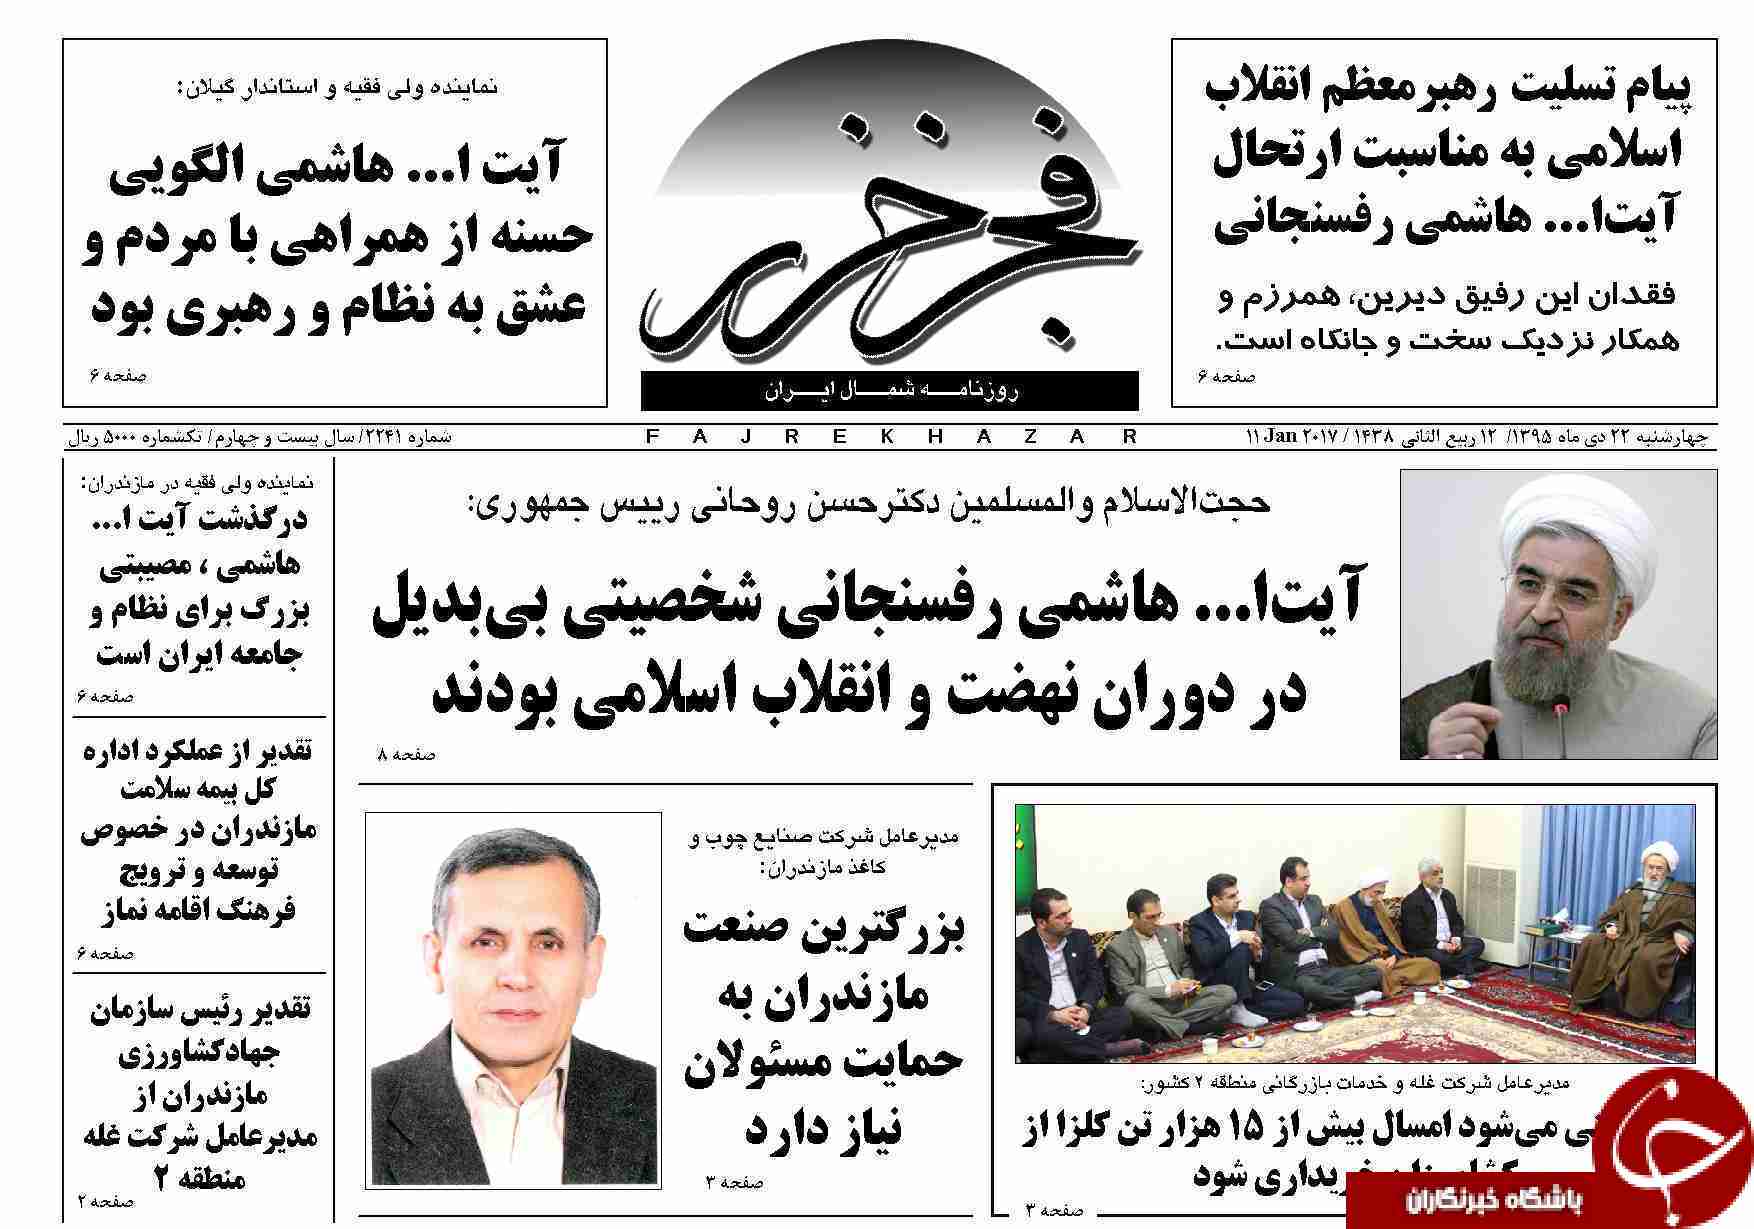 صفحه نخست روزنامه های استان چهارشنبه 22 دی